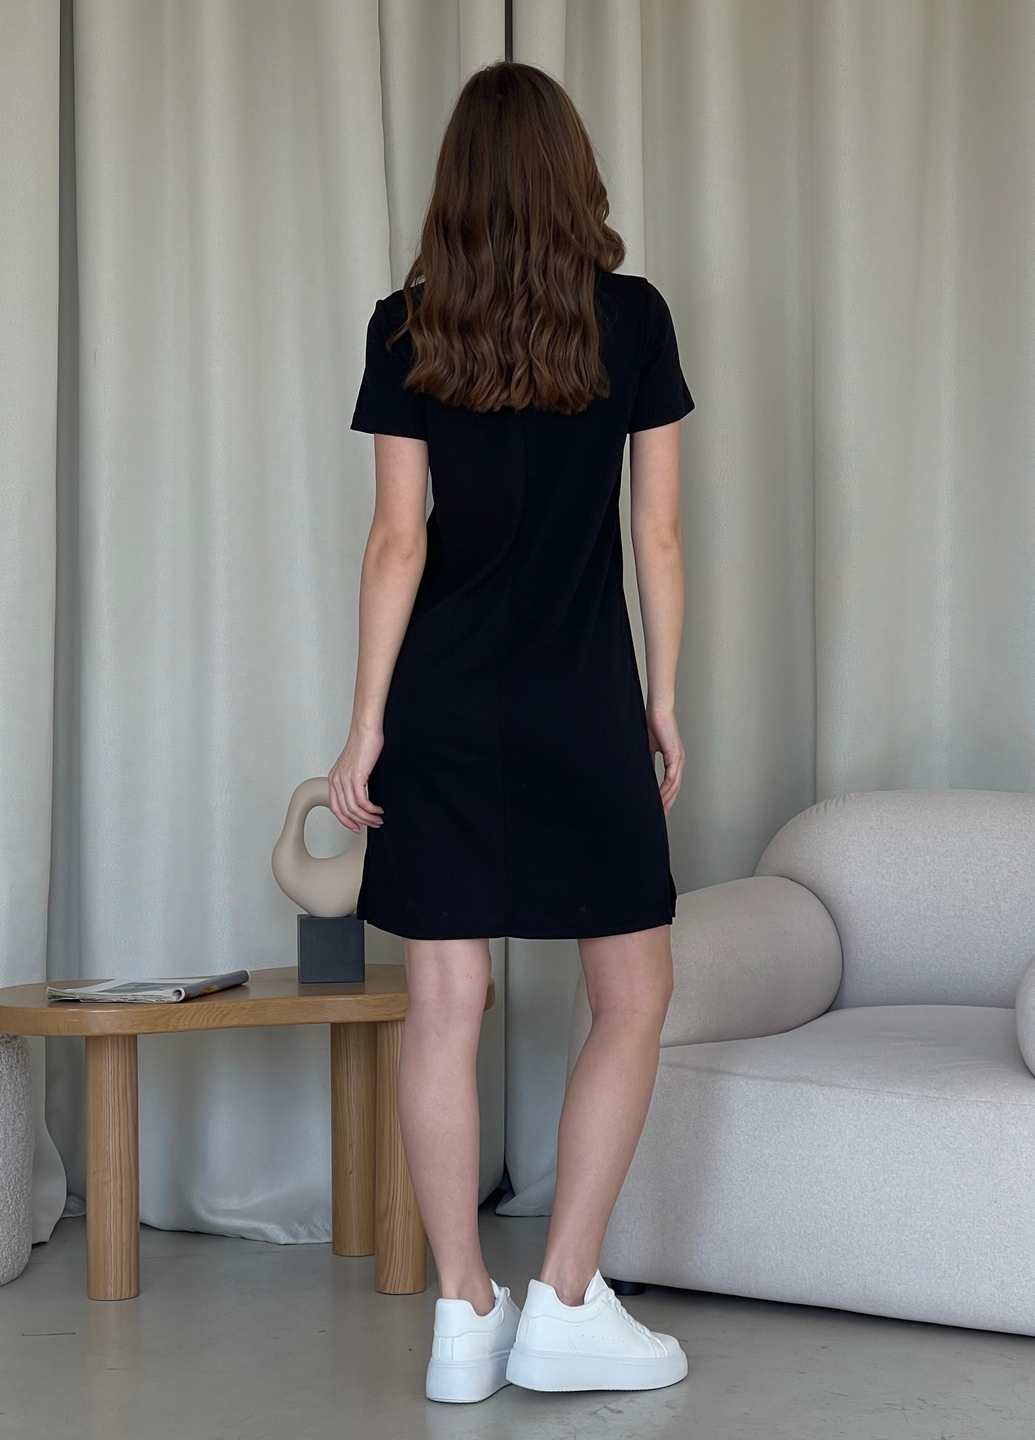 Купить Платье-футболка до колена в рубчик черное Merlini Милан 700000141 размер 42-44 (S-M) в интернет-магазине